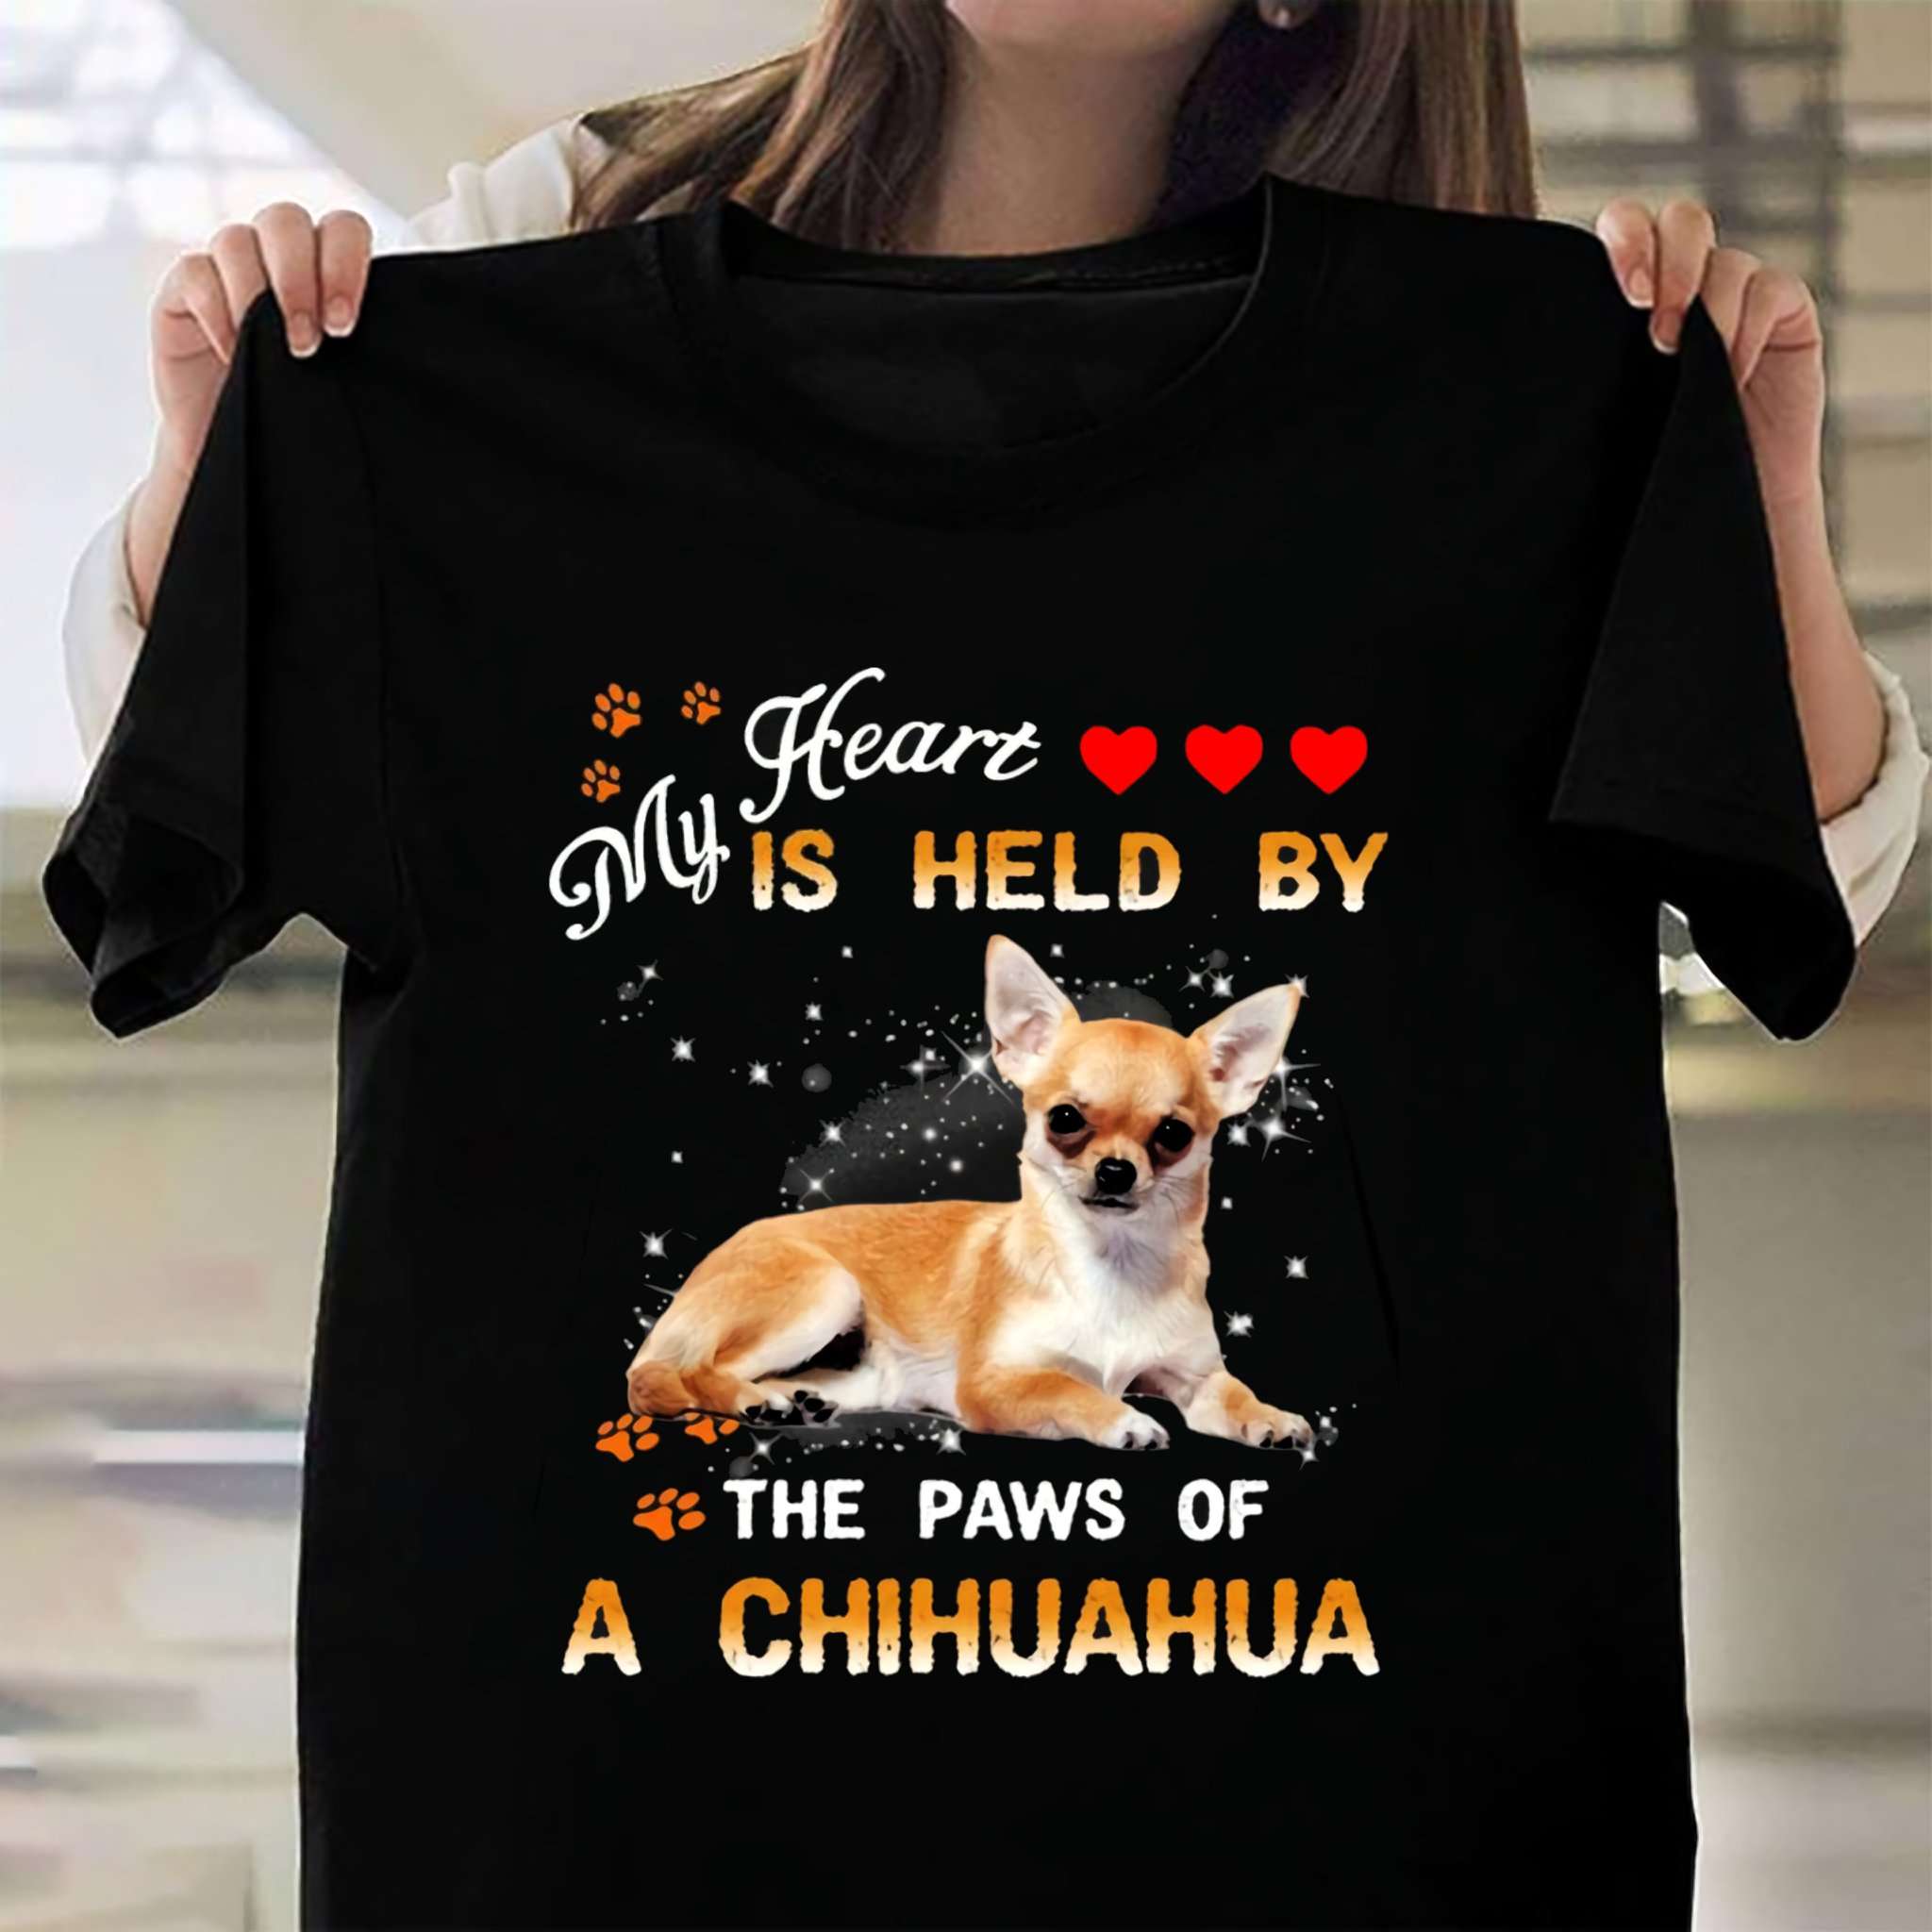 🥰 the Chihuahua Man, the Chihuahua, he blocks a